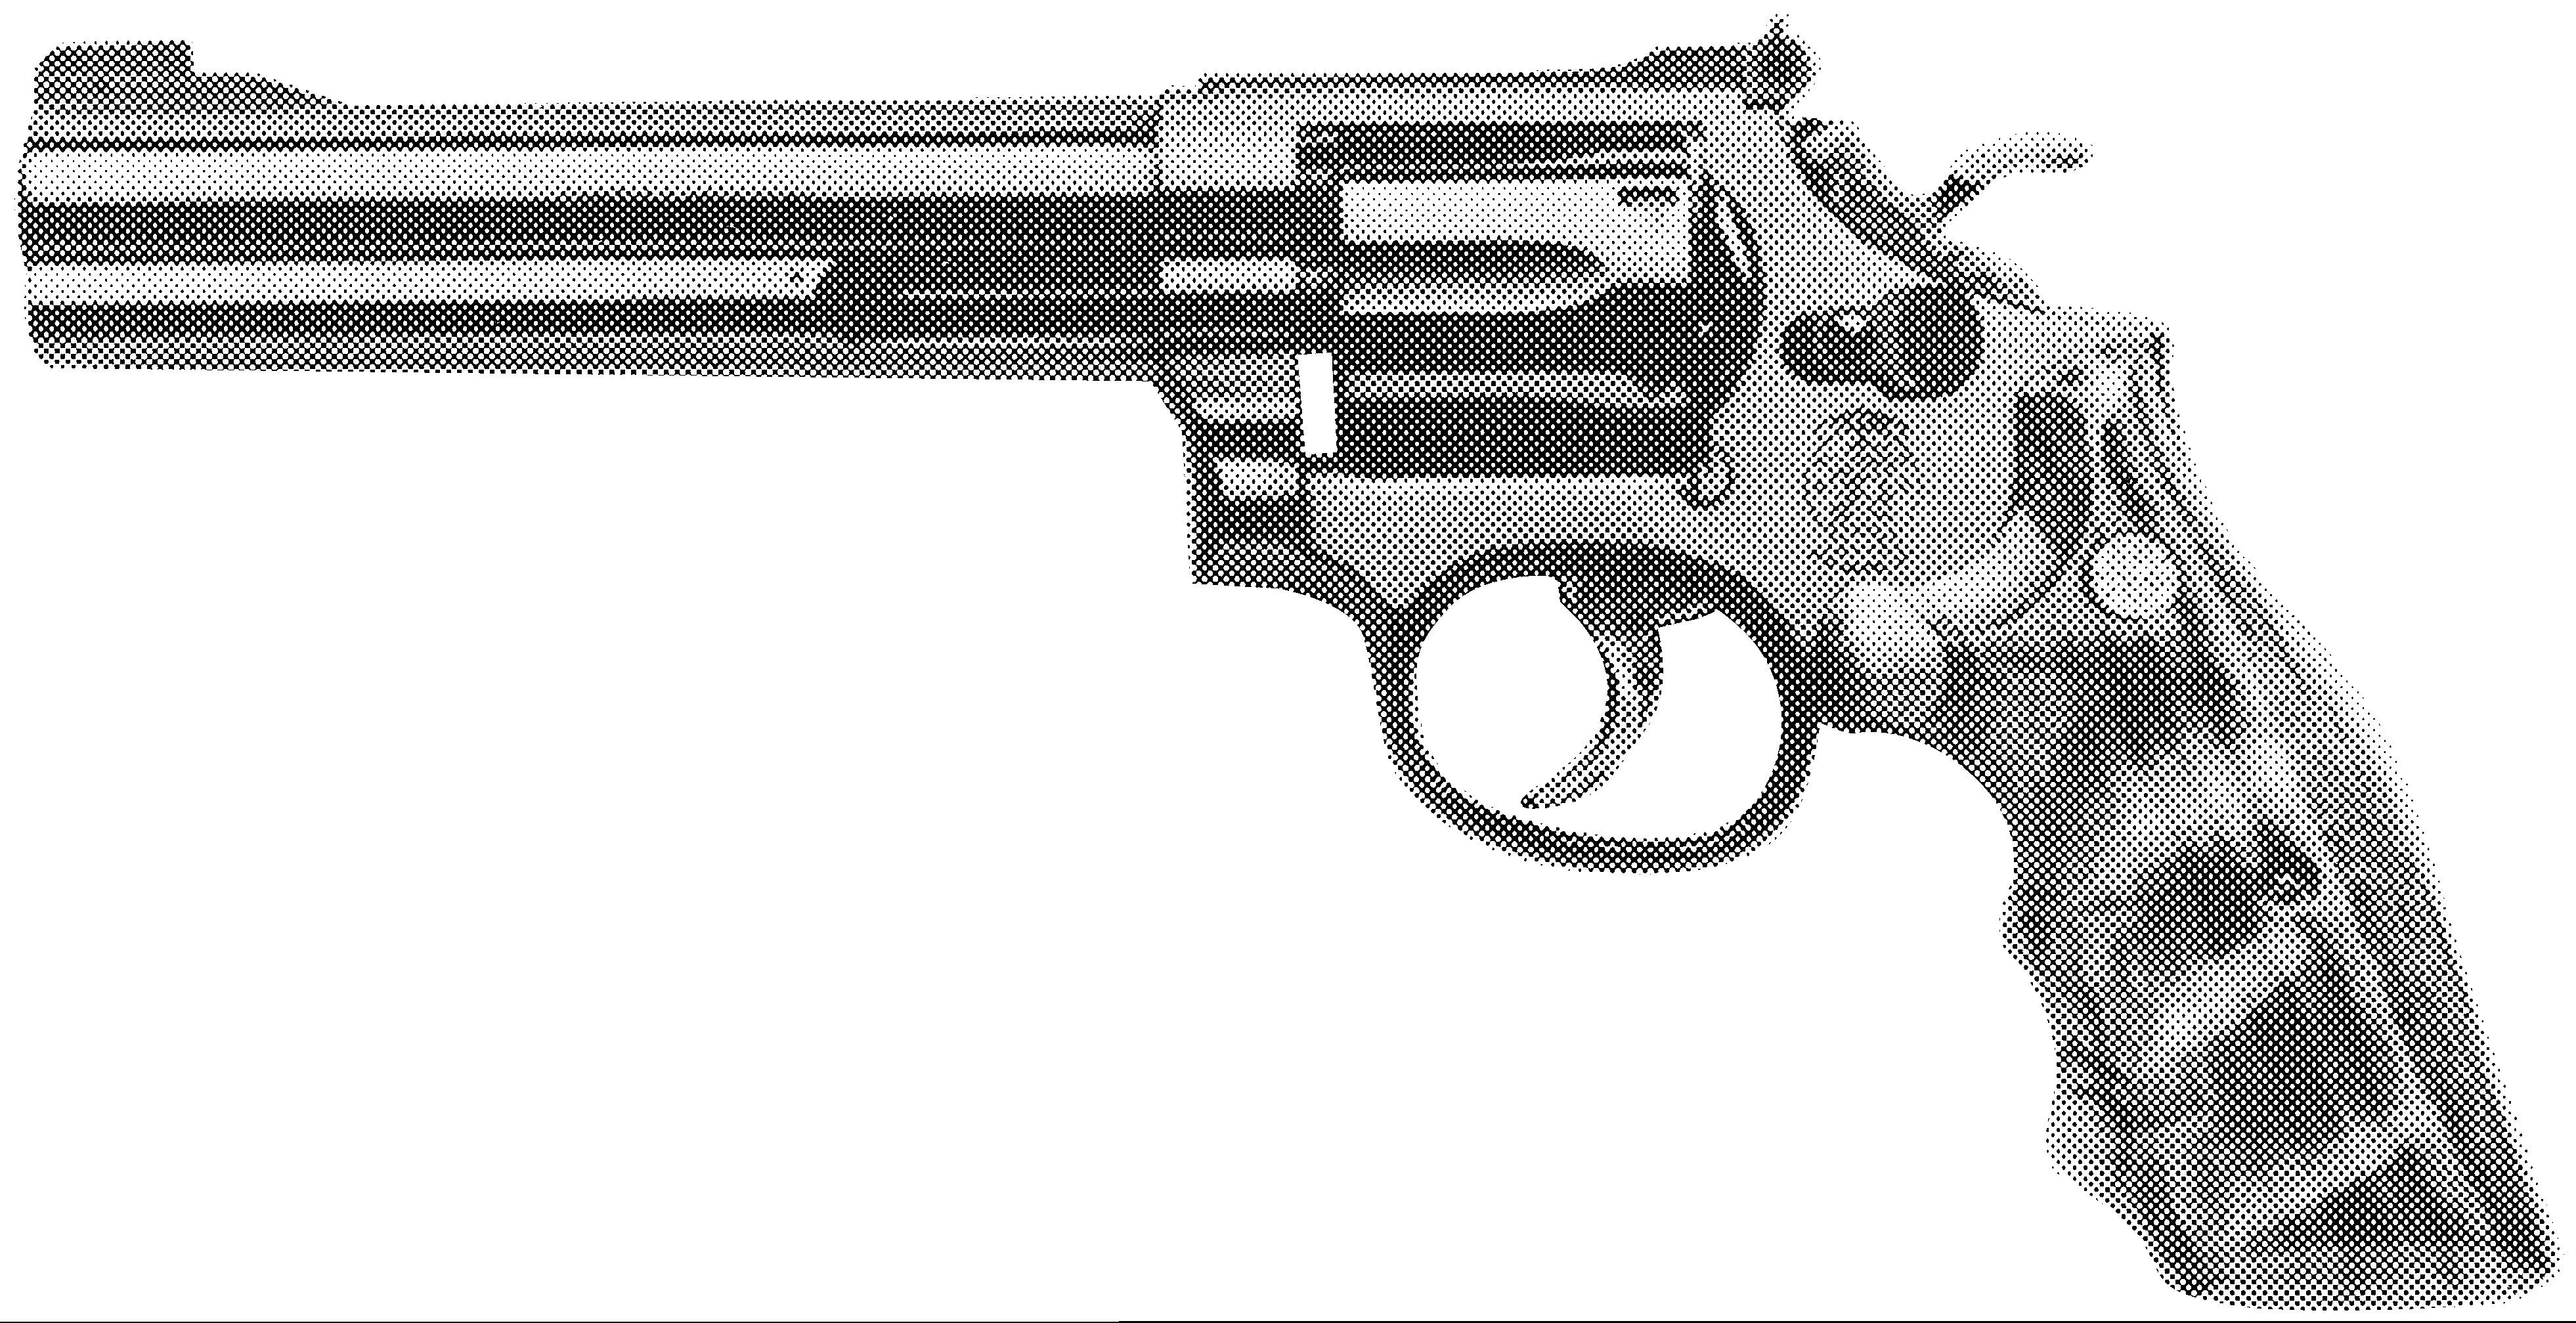 Model 16-4 (.32 H&R Magnum)